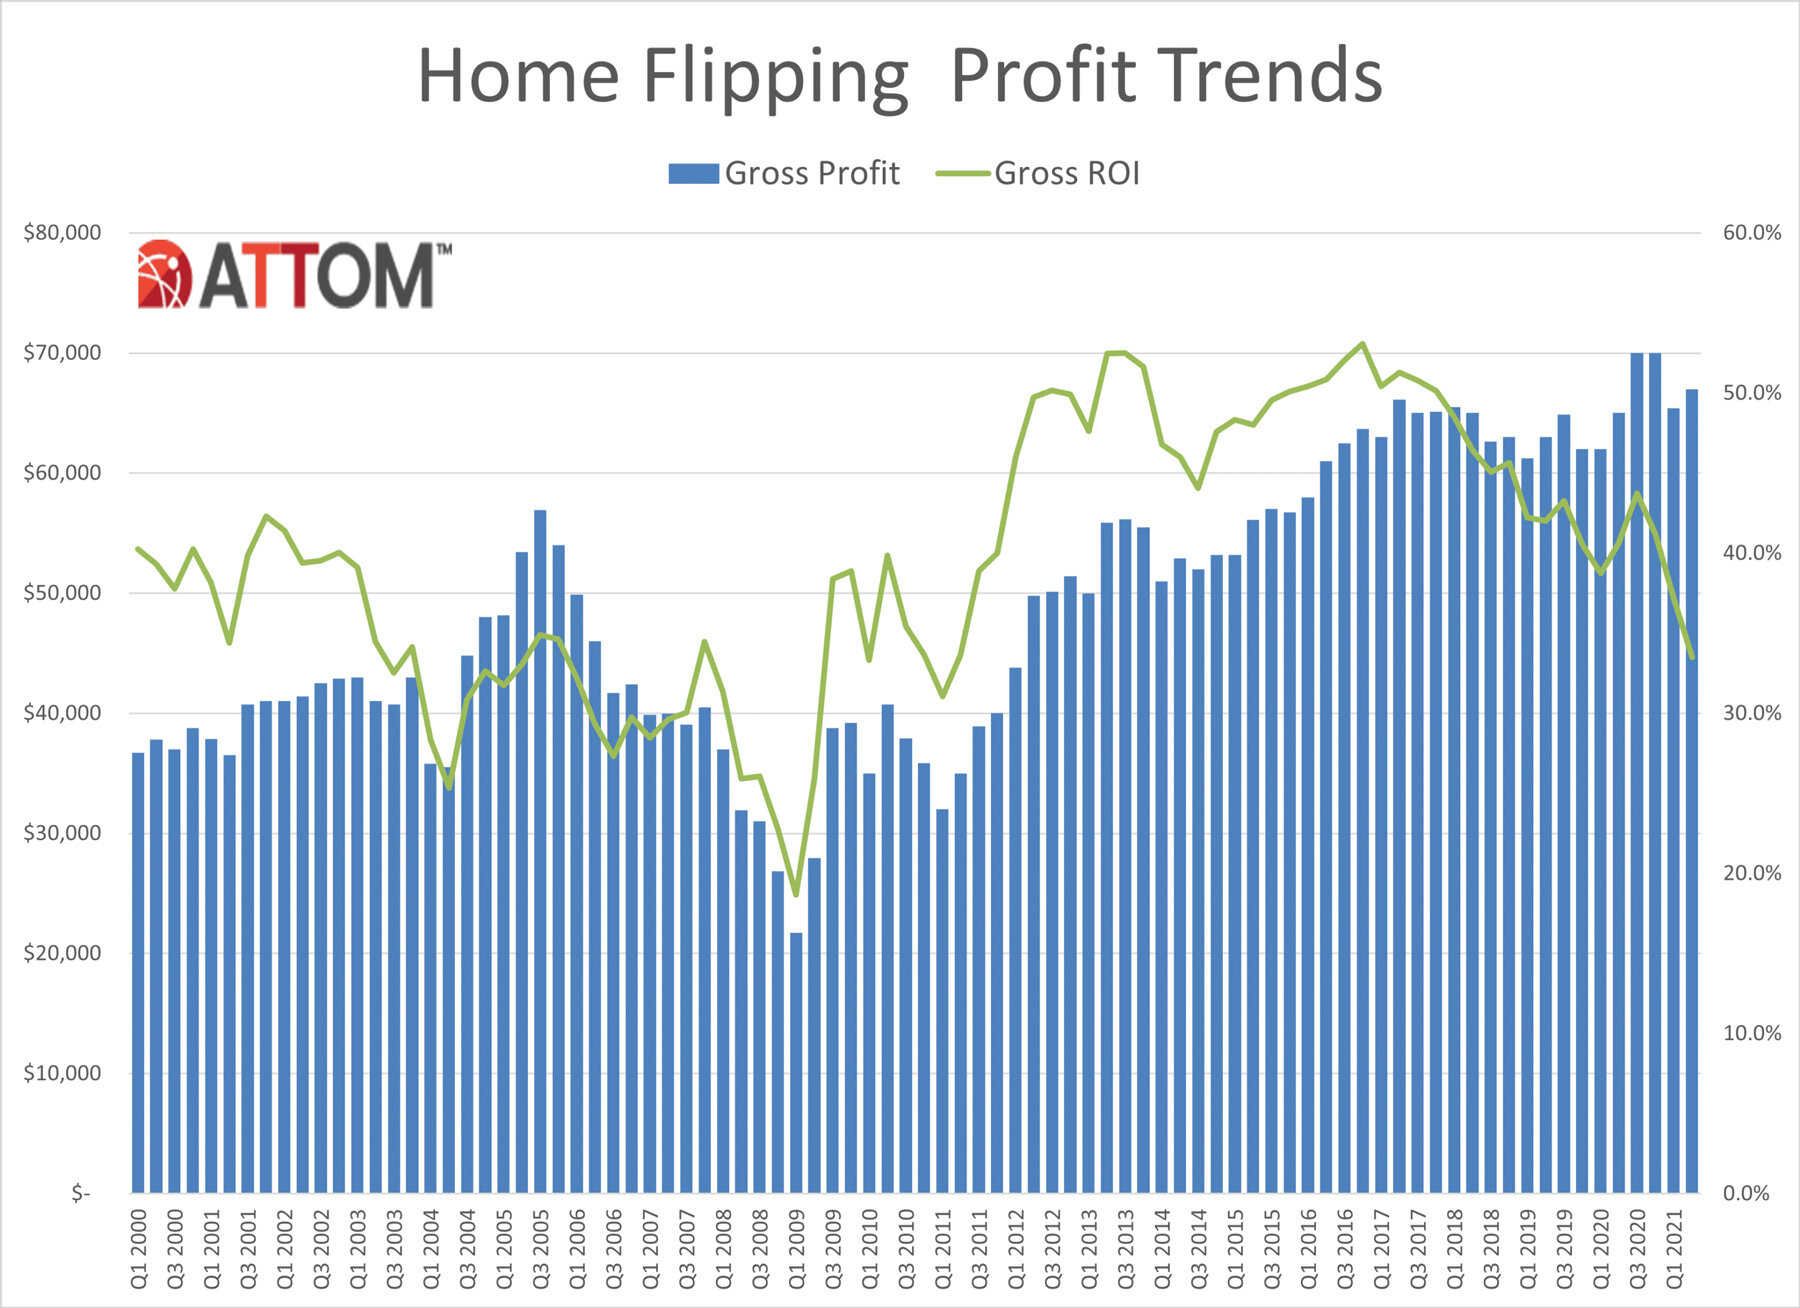 https://www.worldpropertyjournal.com/news-assets/Q2-2021-Home-Flipping-Profit-Trends-Chart.jpg